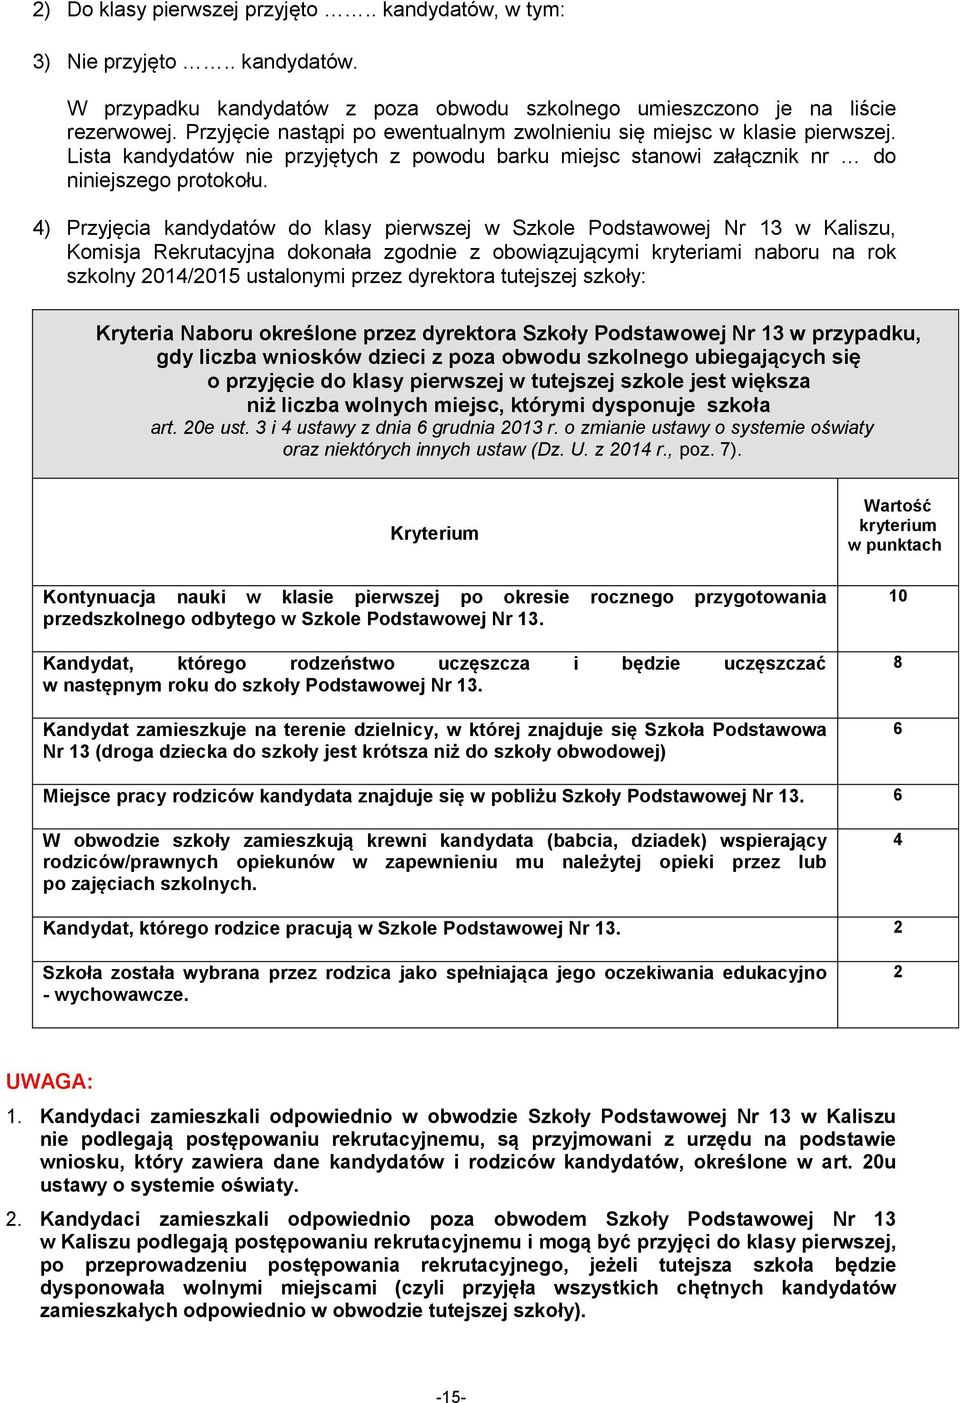 4) Przyjęcia kandydatów do klasy pierwszej w Szkole Podstawowej Nr 13 w Kaliszu, Komisja Rekrutacyjna dokonała zgodnie z obowiązującymi kryteriami naboru na rok szkolny 2014/2015 ustalonymi przez